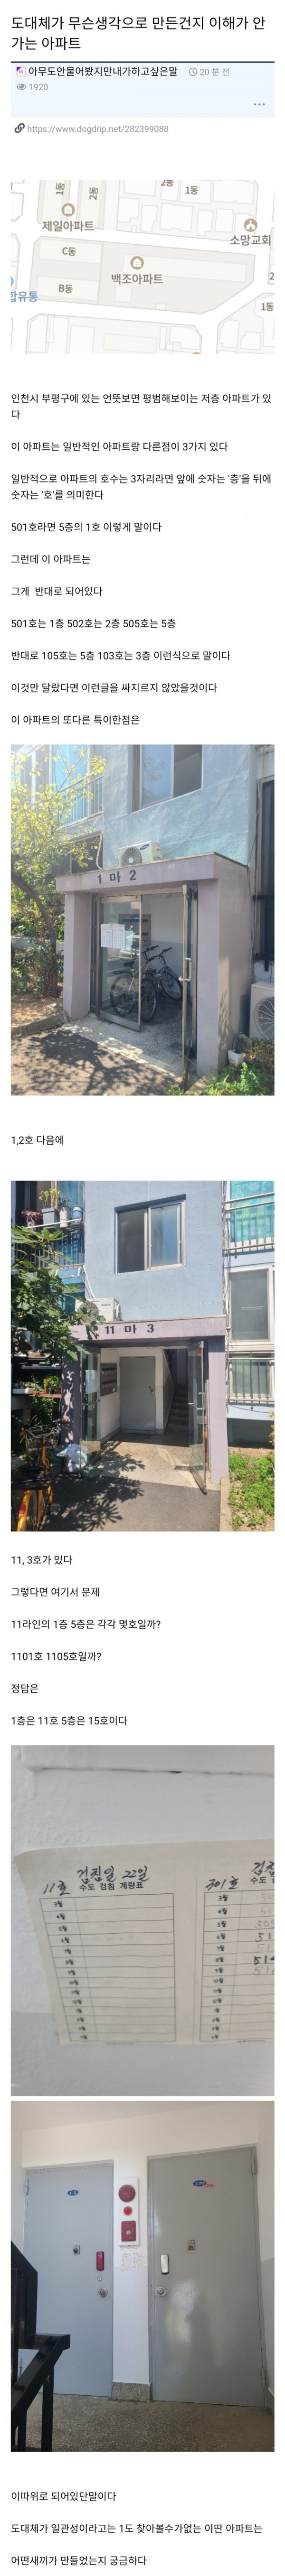 일관성이 전혀없는 인천의 어떤 아파트